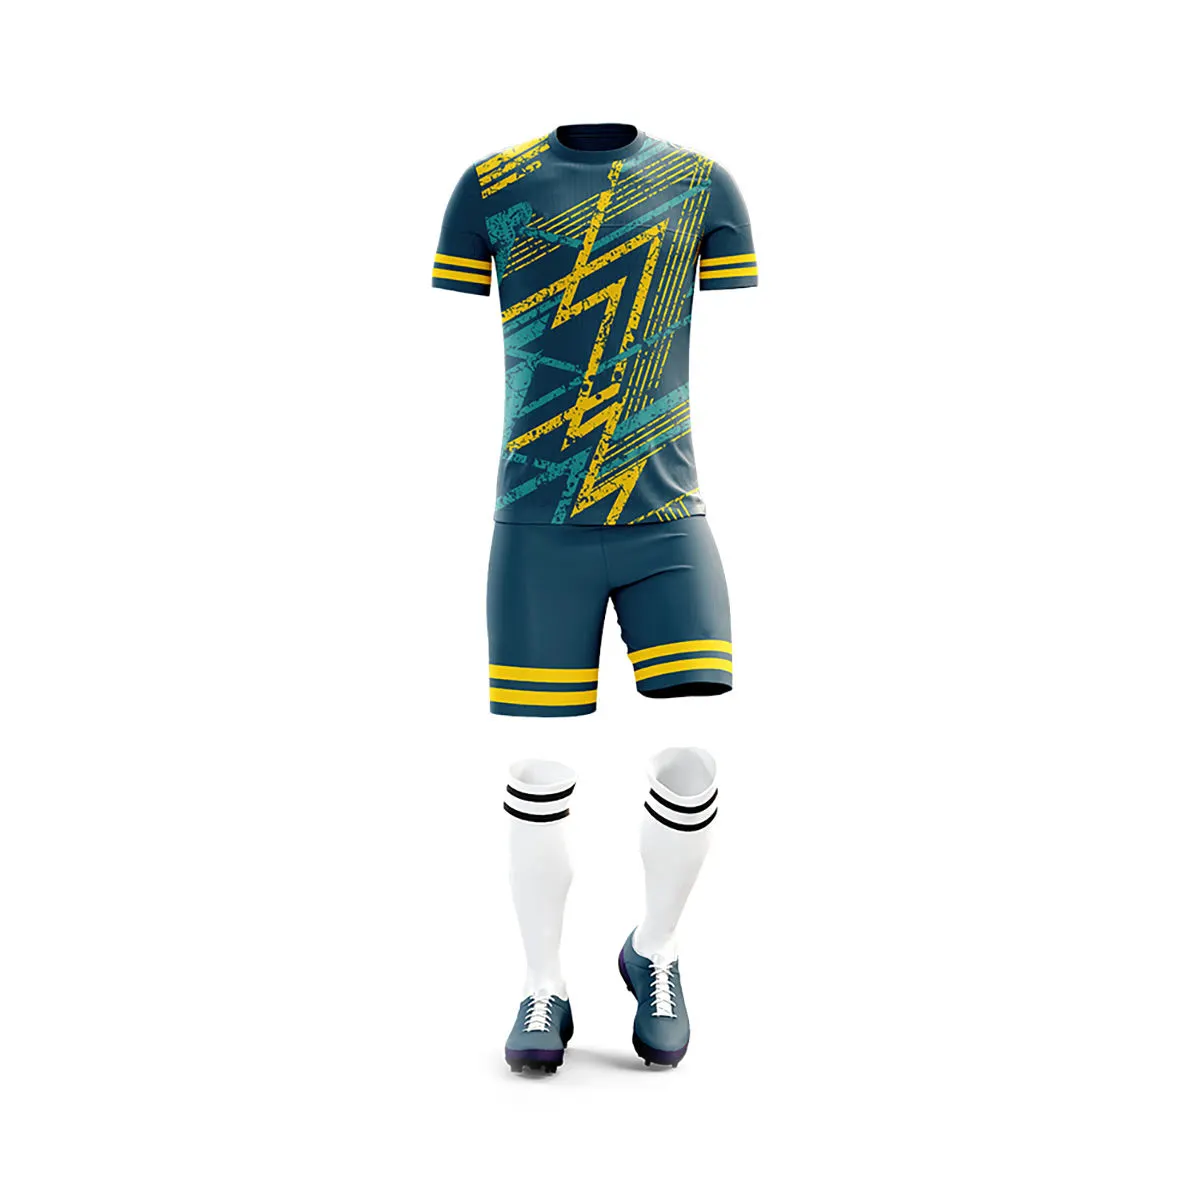 Jersey sublimasi Digital pria, seragam olahraga sepak bola, Jersey sublimasi, kualitas terbaik, harga murah